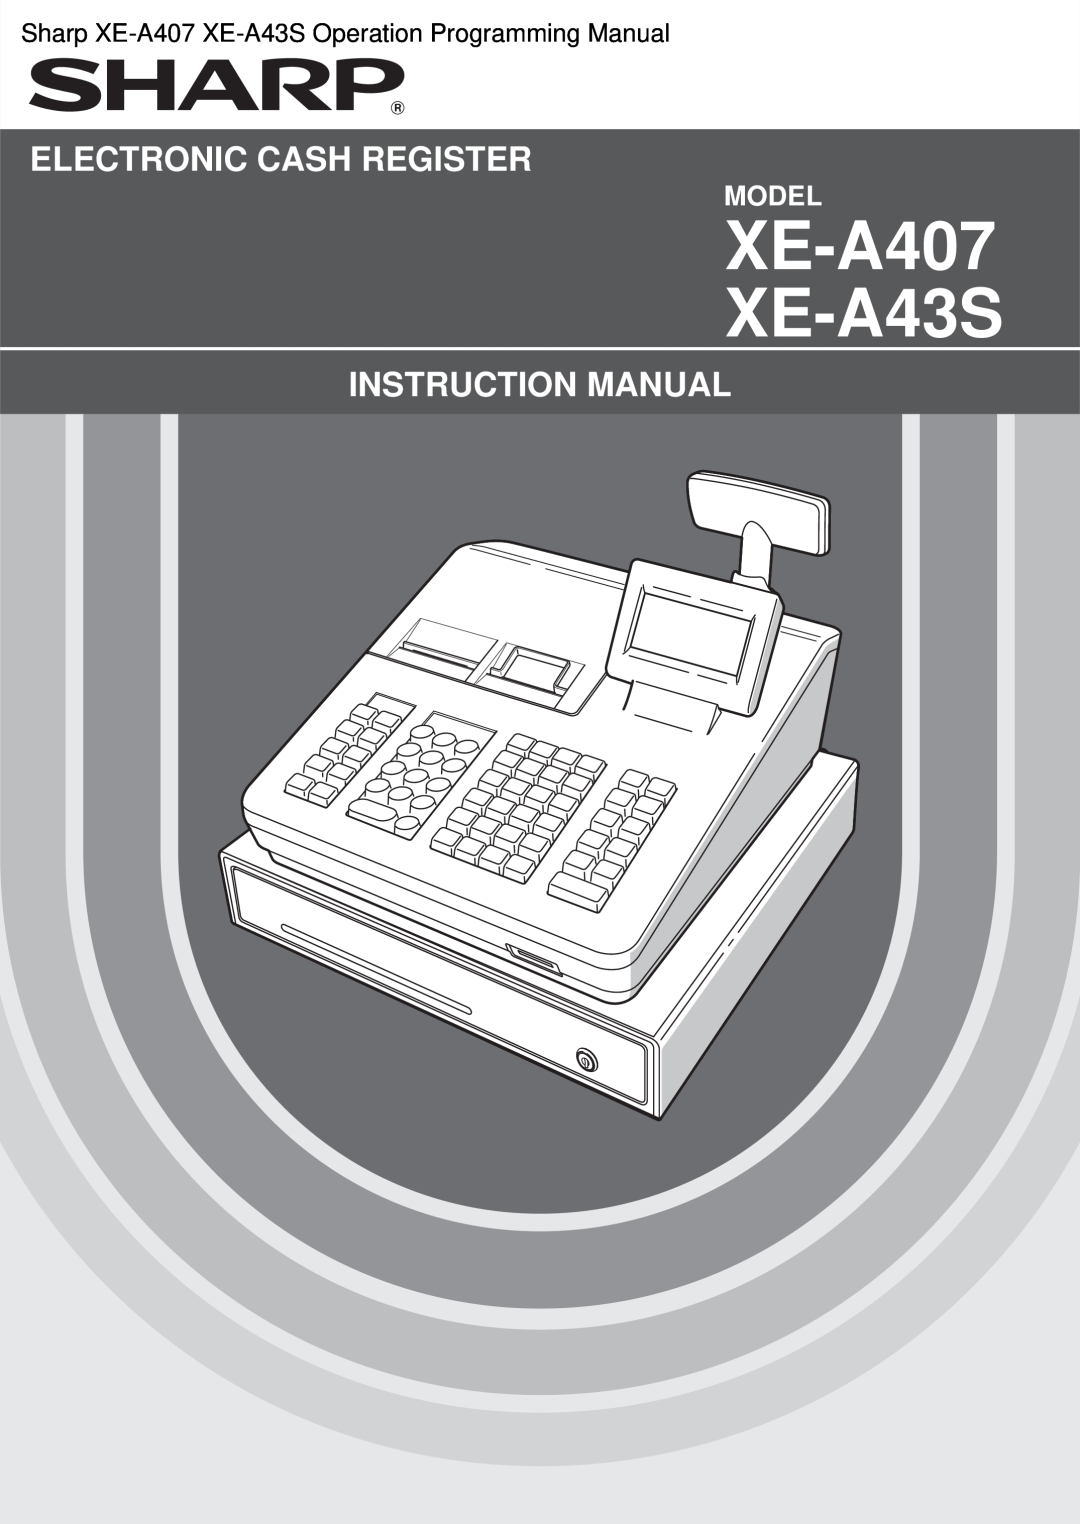 Sharp XEA407 instruction manual XE-A407 XE-A43S, Electronic Cash Register, Instruction Manual, Model 